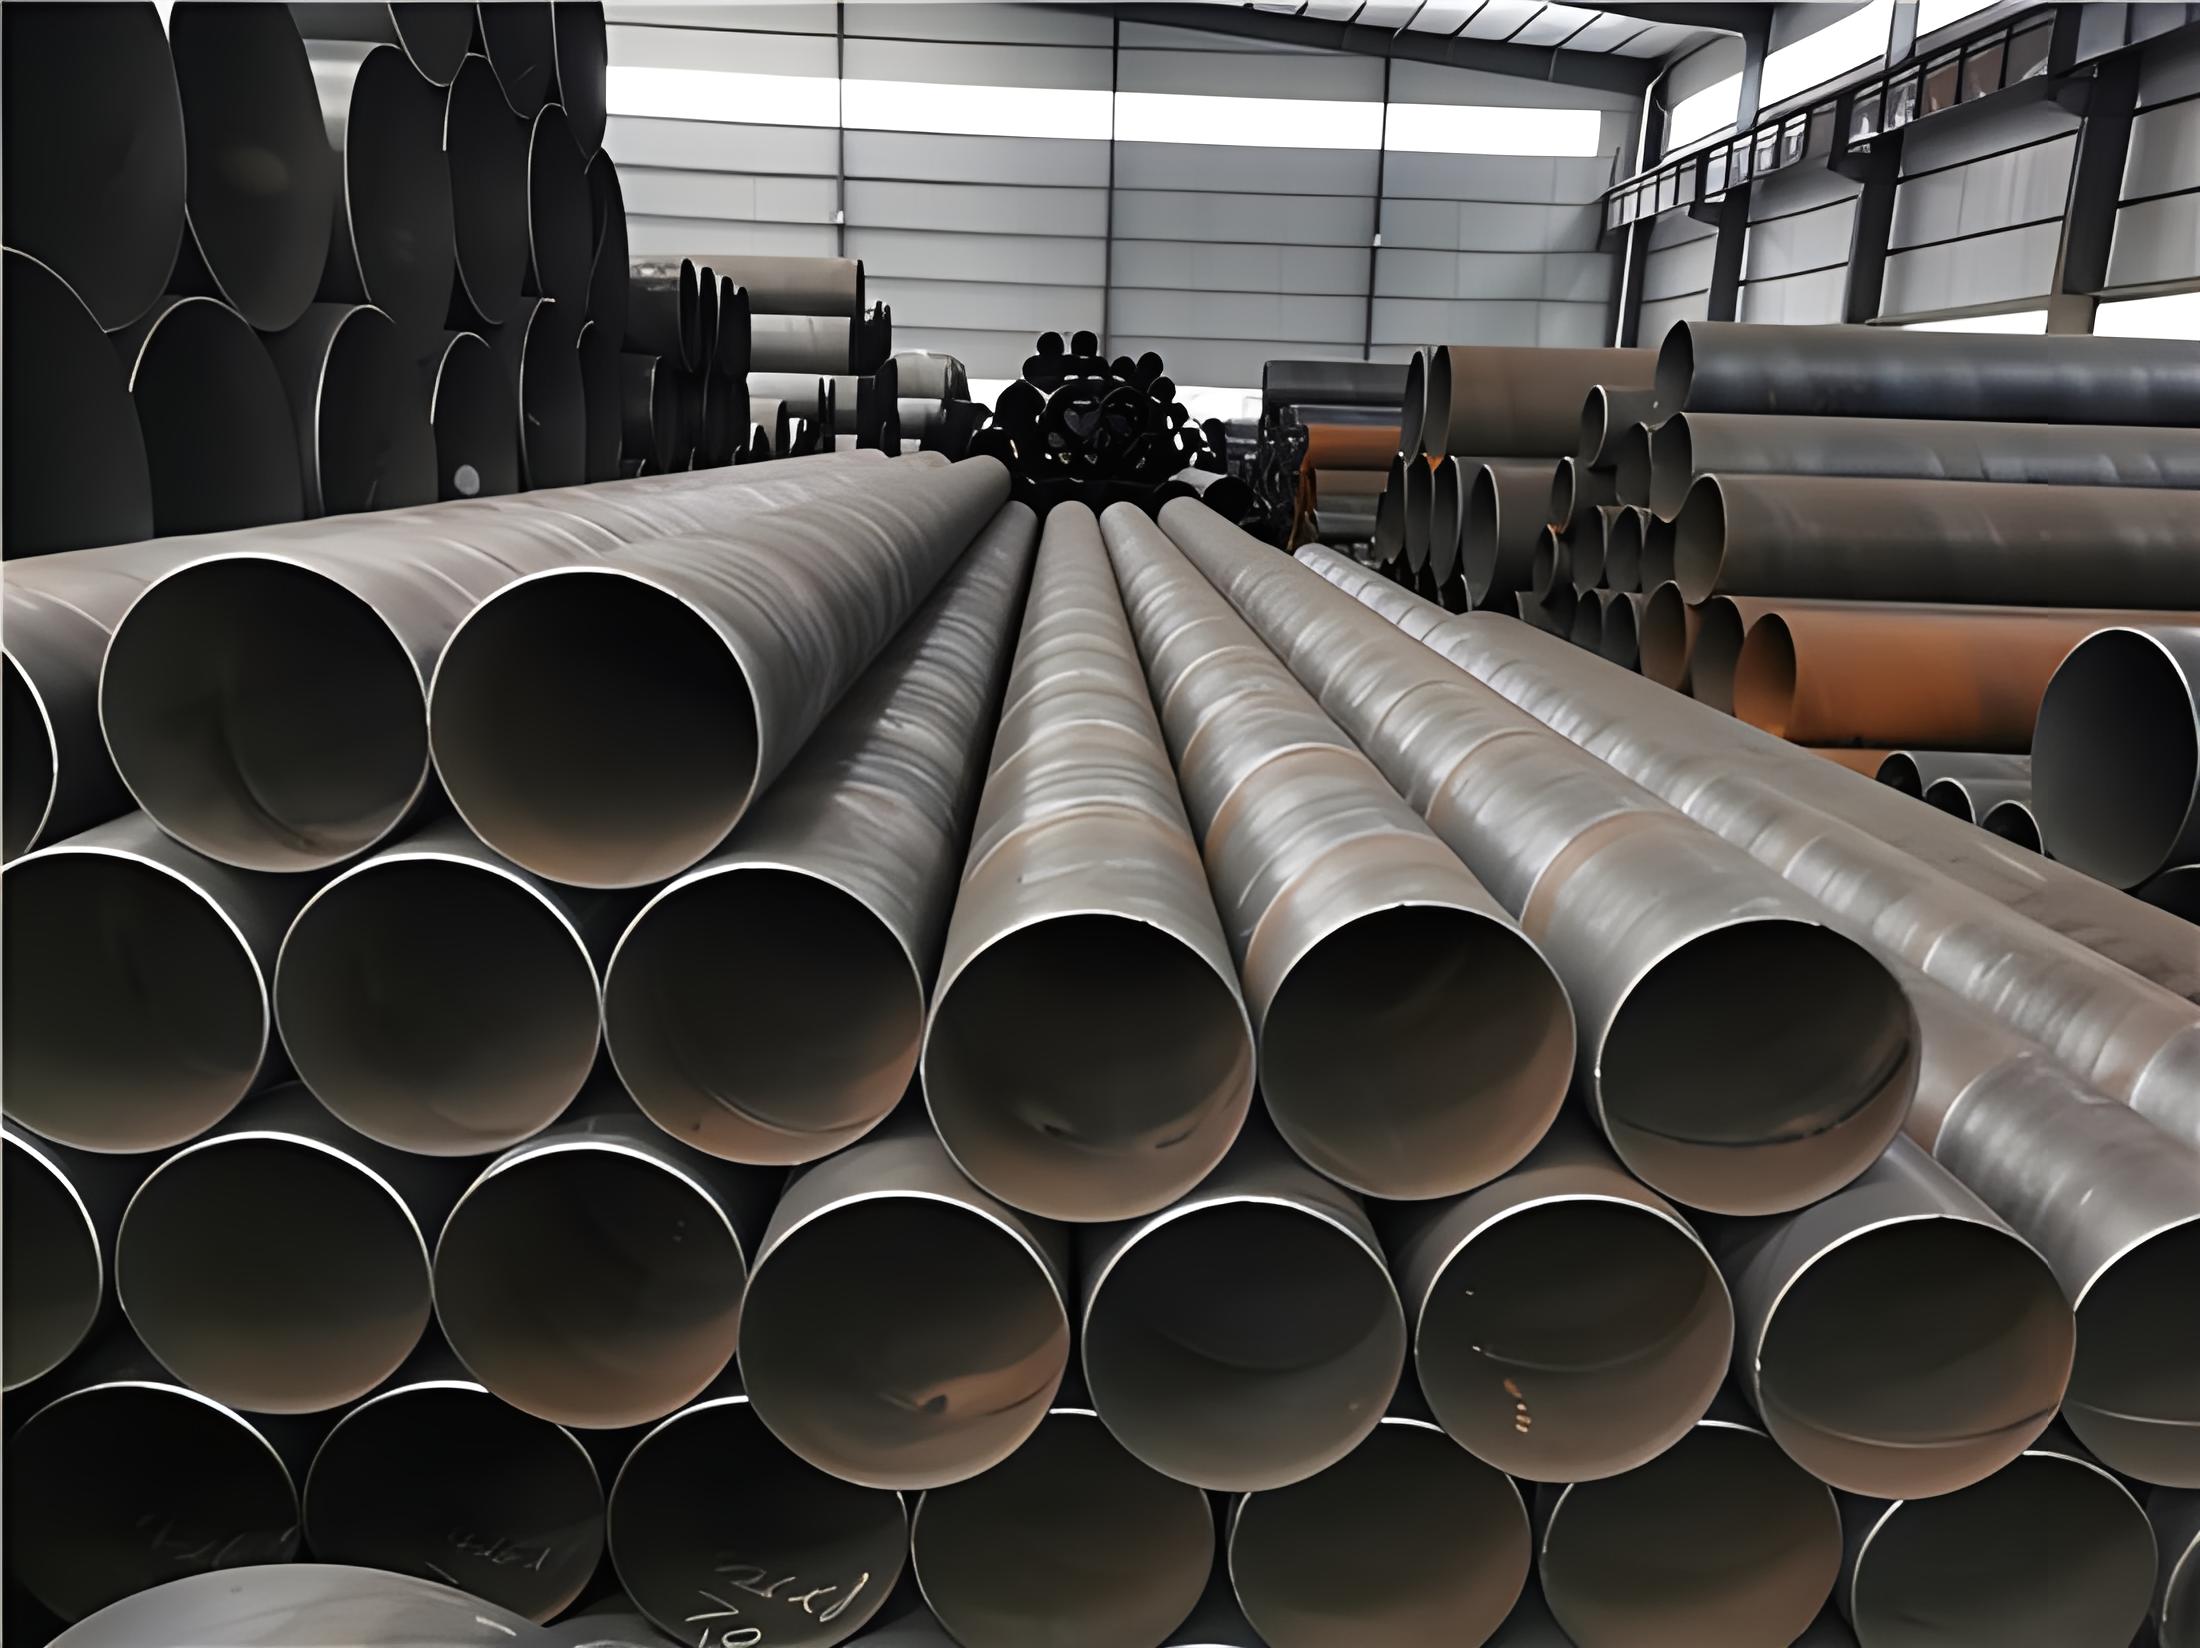 马鞍山螺旋钢管现代工业建设的坚实基石